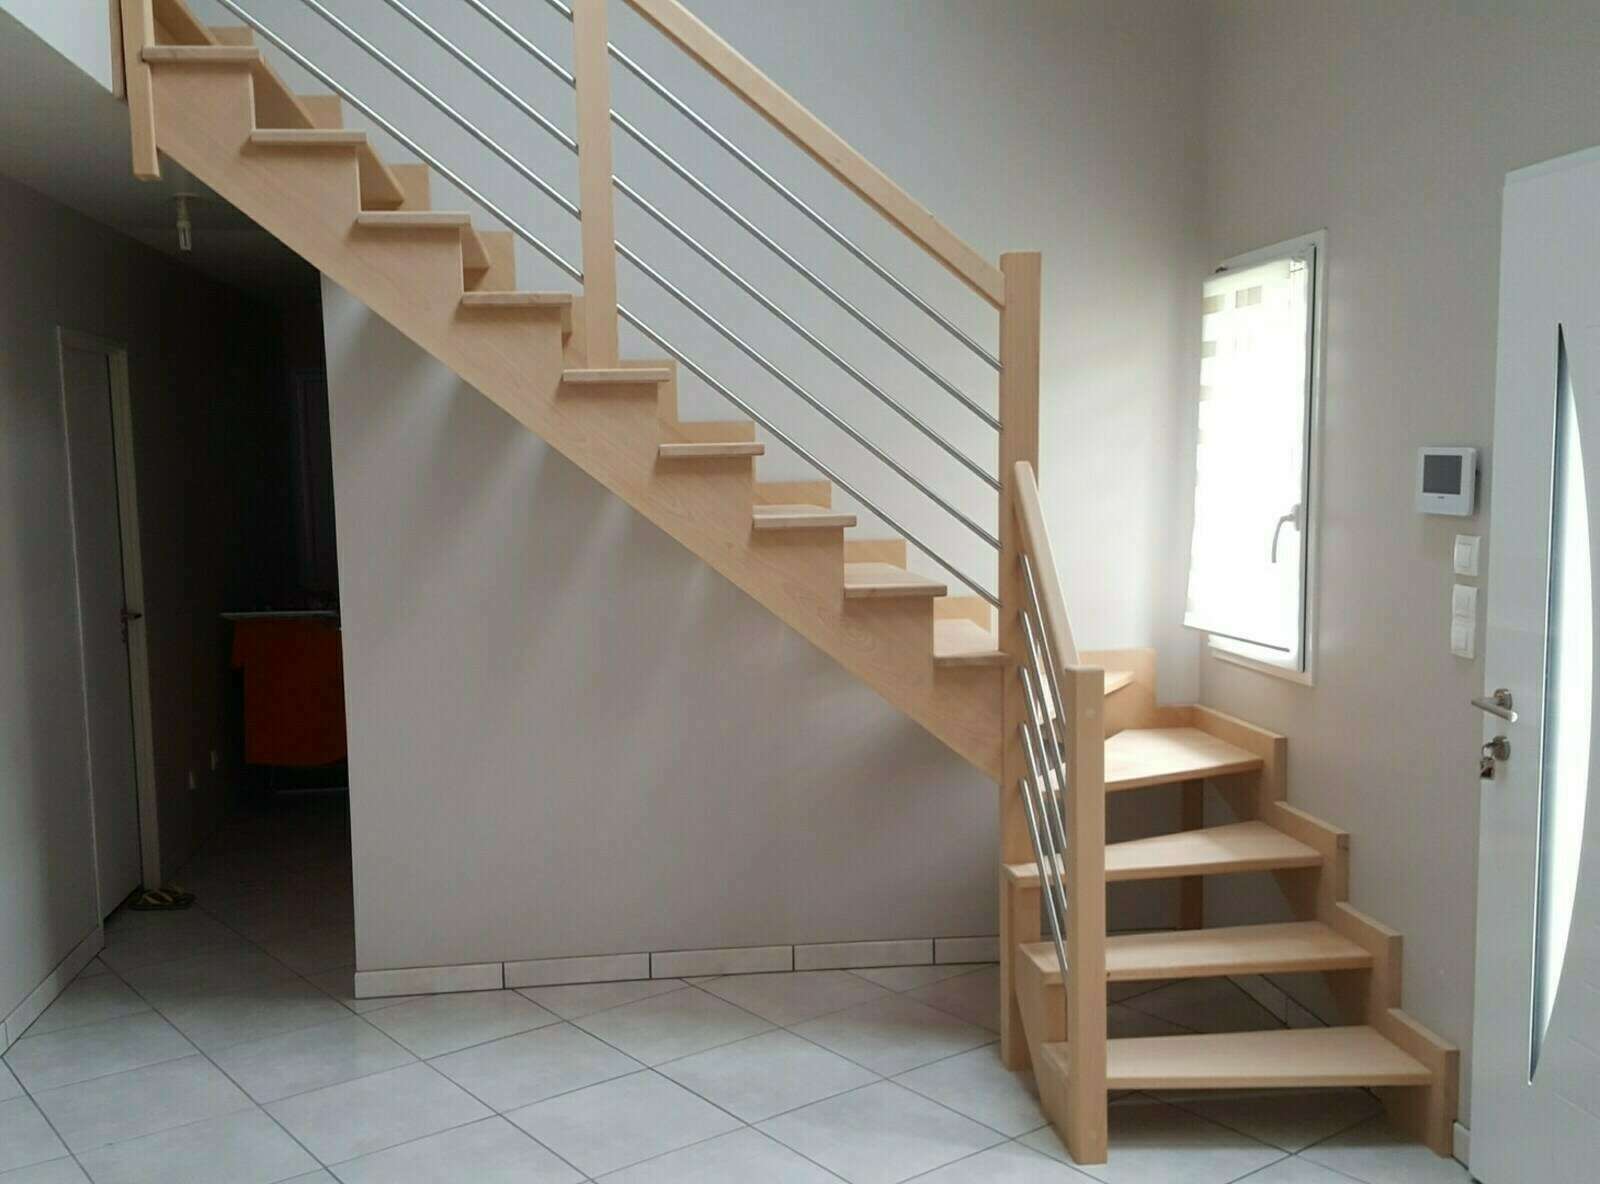 L’escalier quart tournant : le plus courant